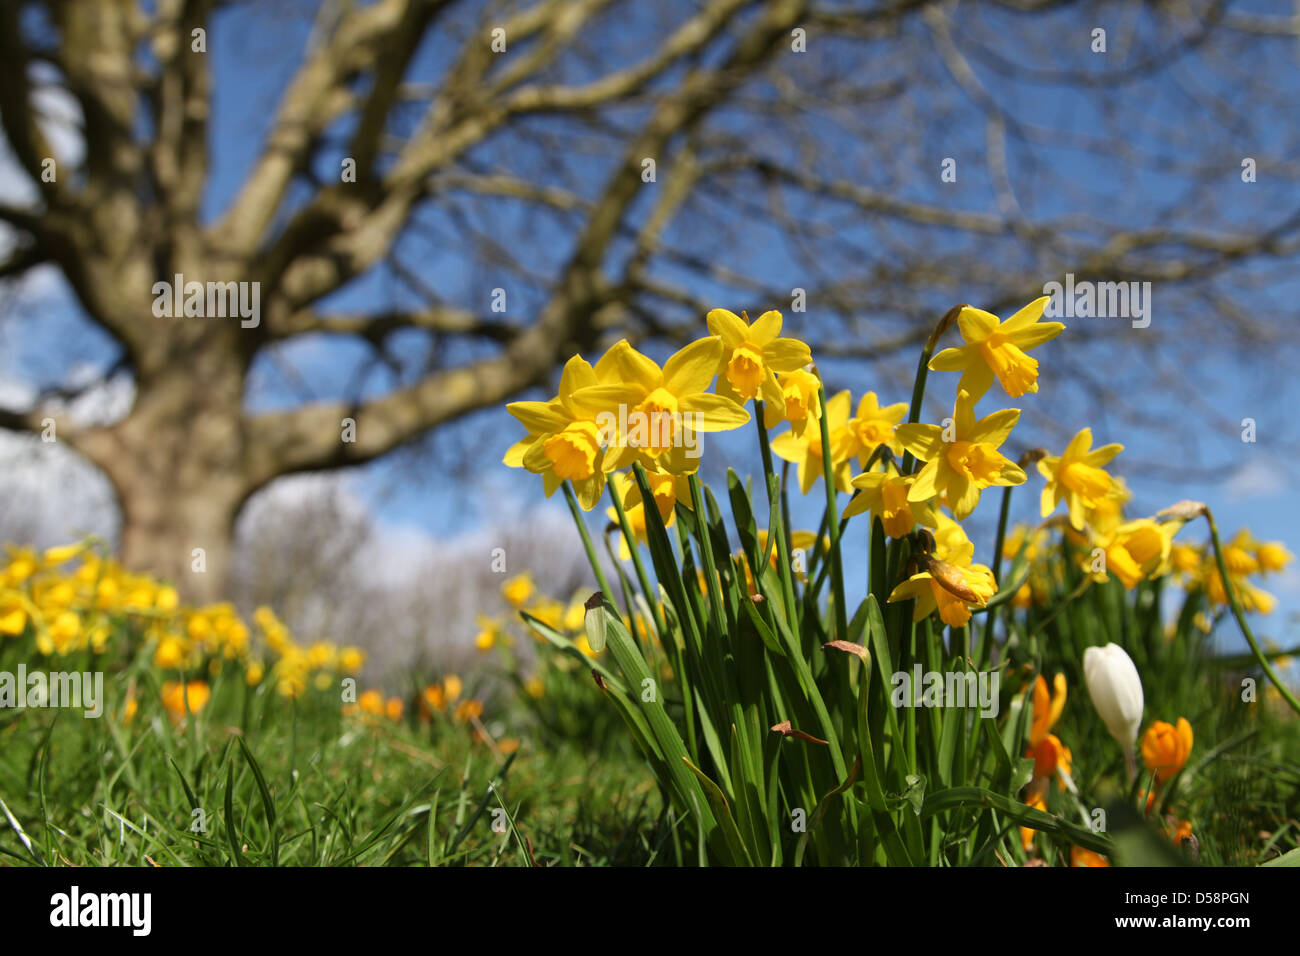 Narzissen im Eastrop Park, Basingstoke, Hampshire zu Beginn Frühjahr 2013 wachsen. Dieses eins der wenigen sonnigen Tage im März. Stockfoto